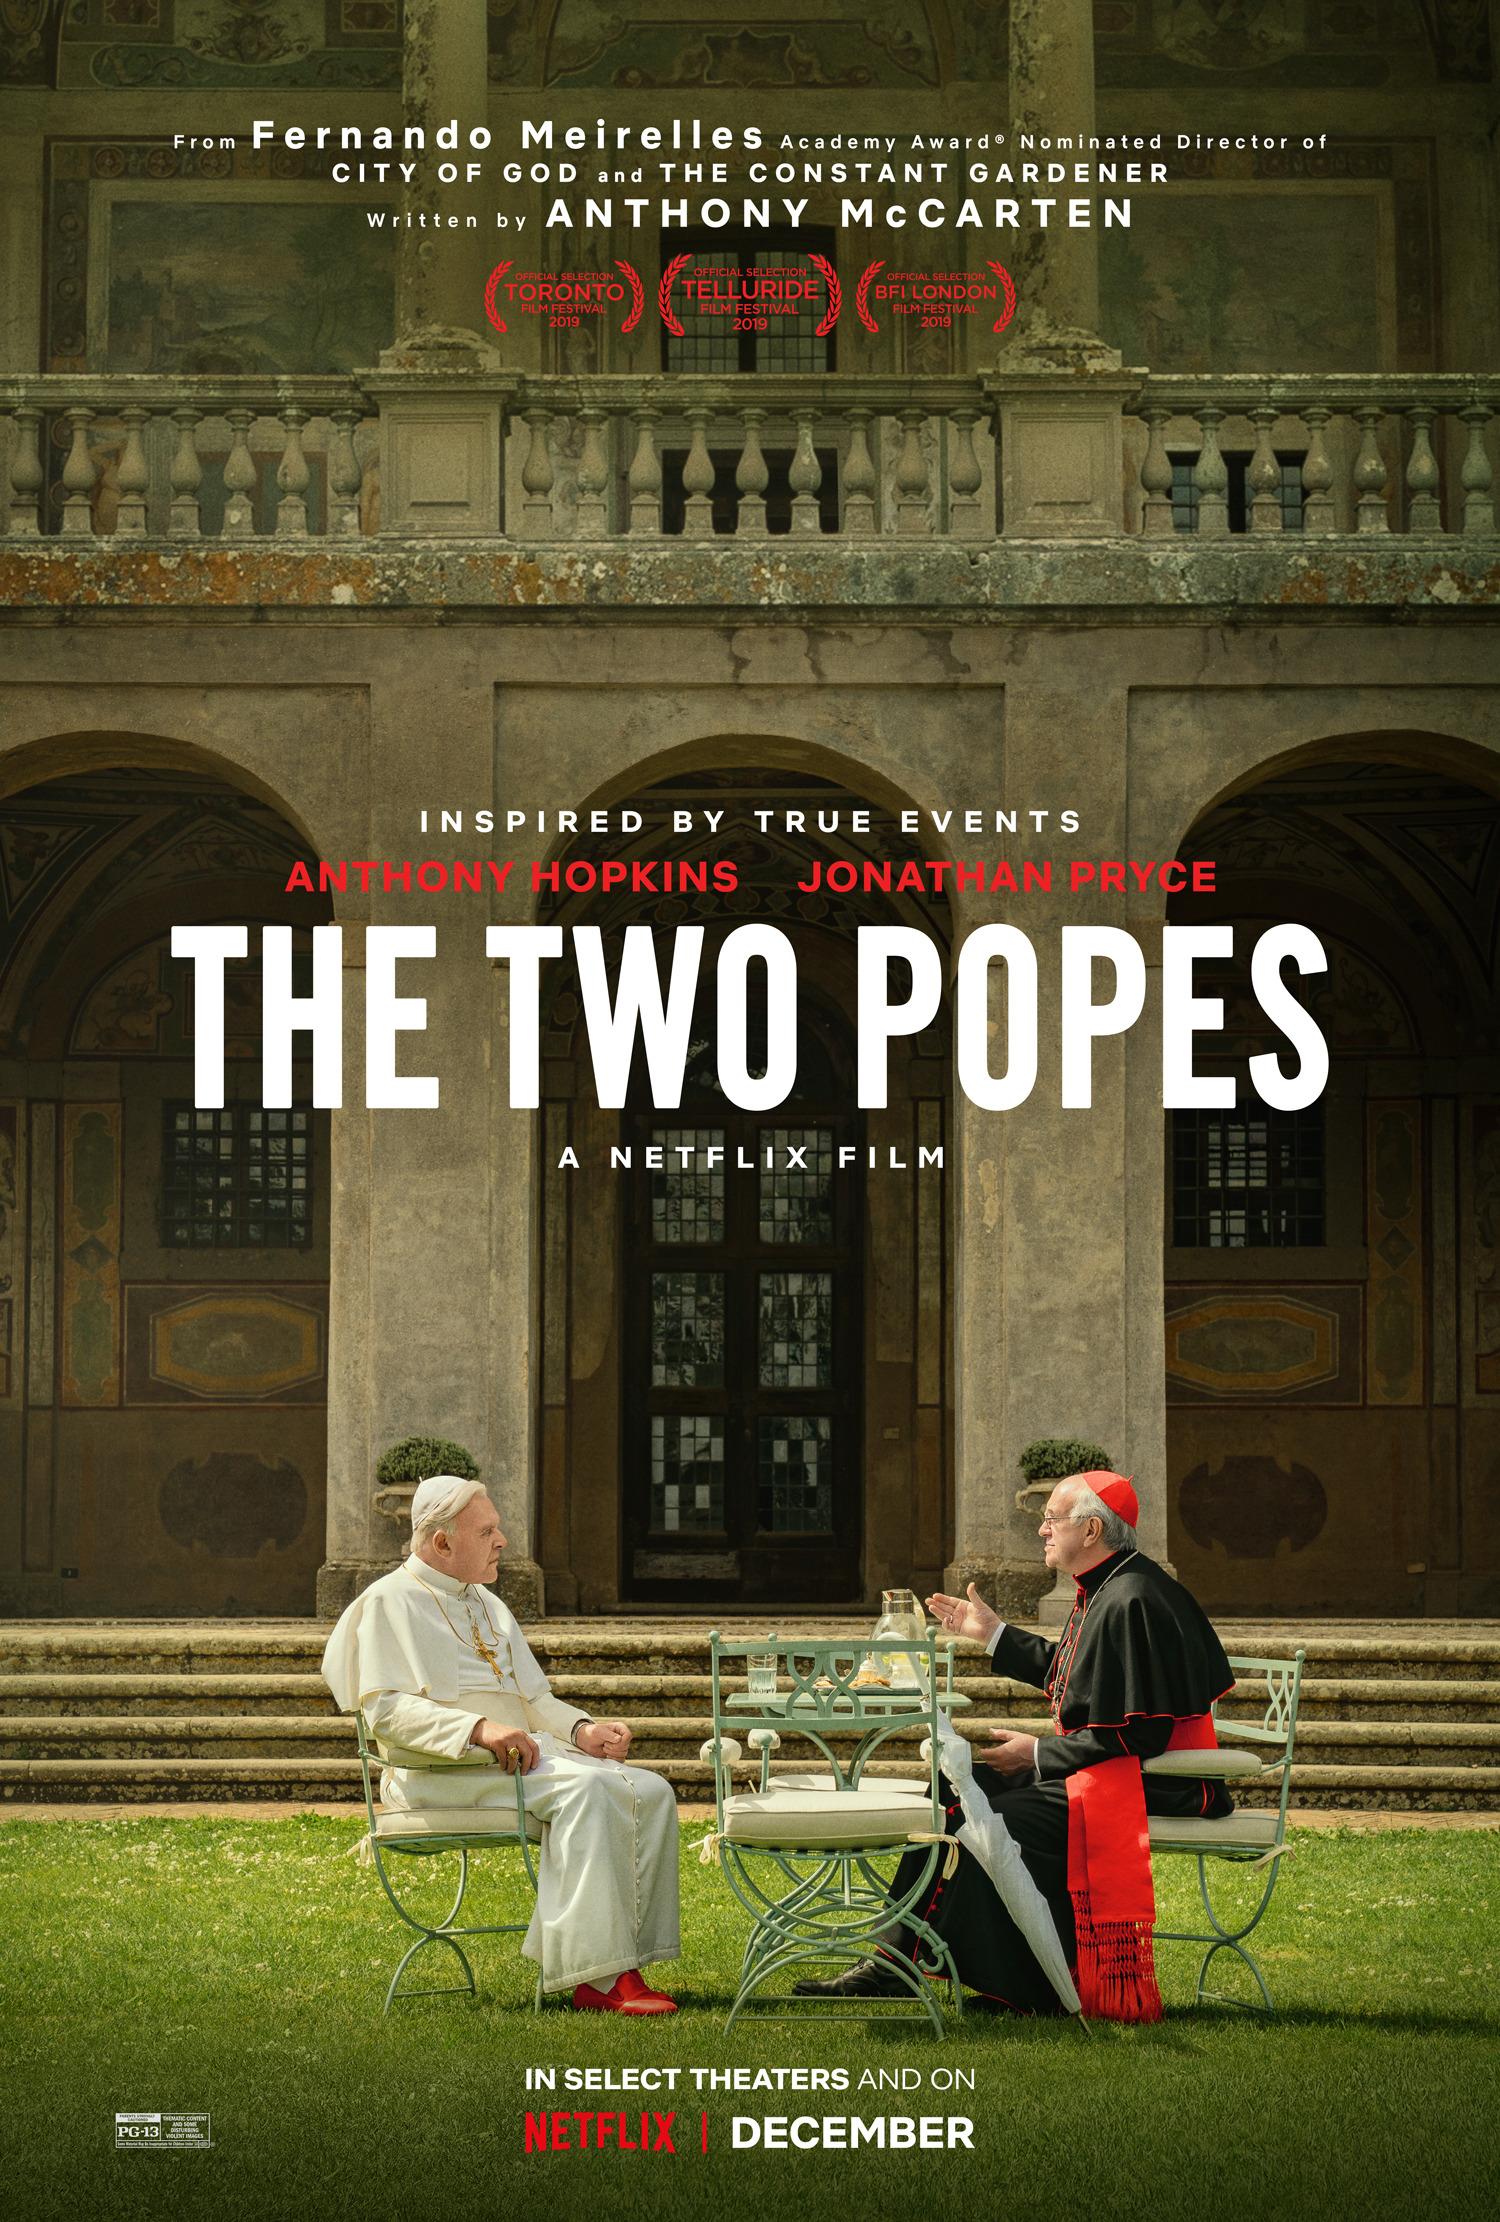 Постер - Два Папы: 1500x2222 / 509.39 Кб